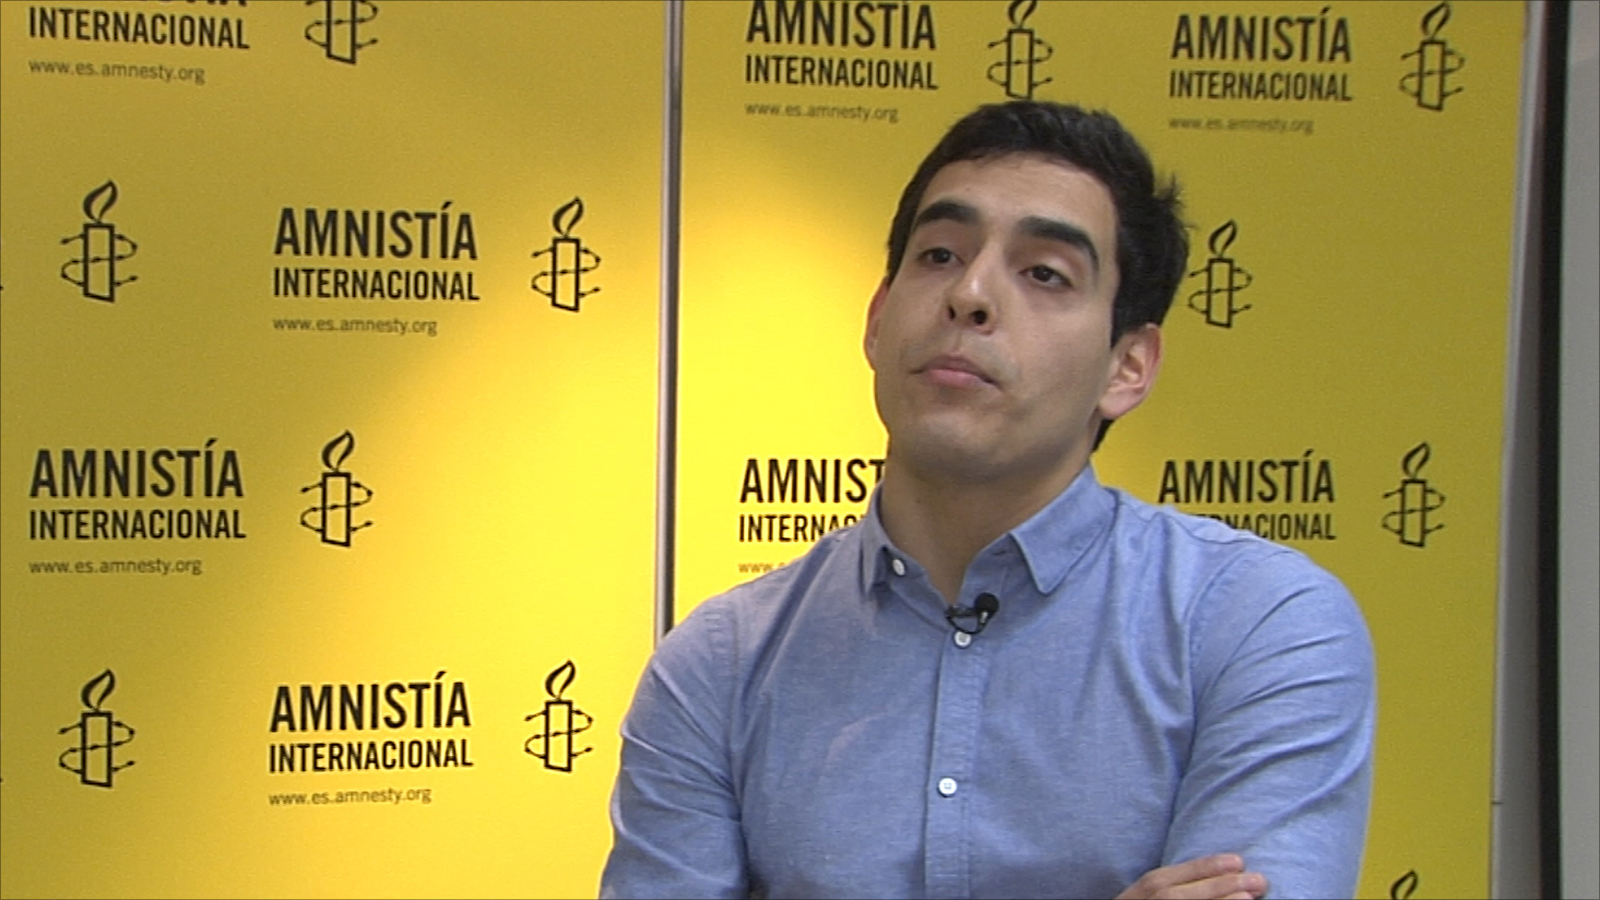 ‪كاناليس: هناك خشية من أن تعوق قوانين إسبانية صدرت مؤخرا مواصلة السير في إجراءات الدعوى‬ (الجزيرة)